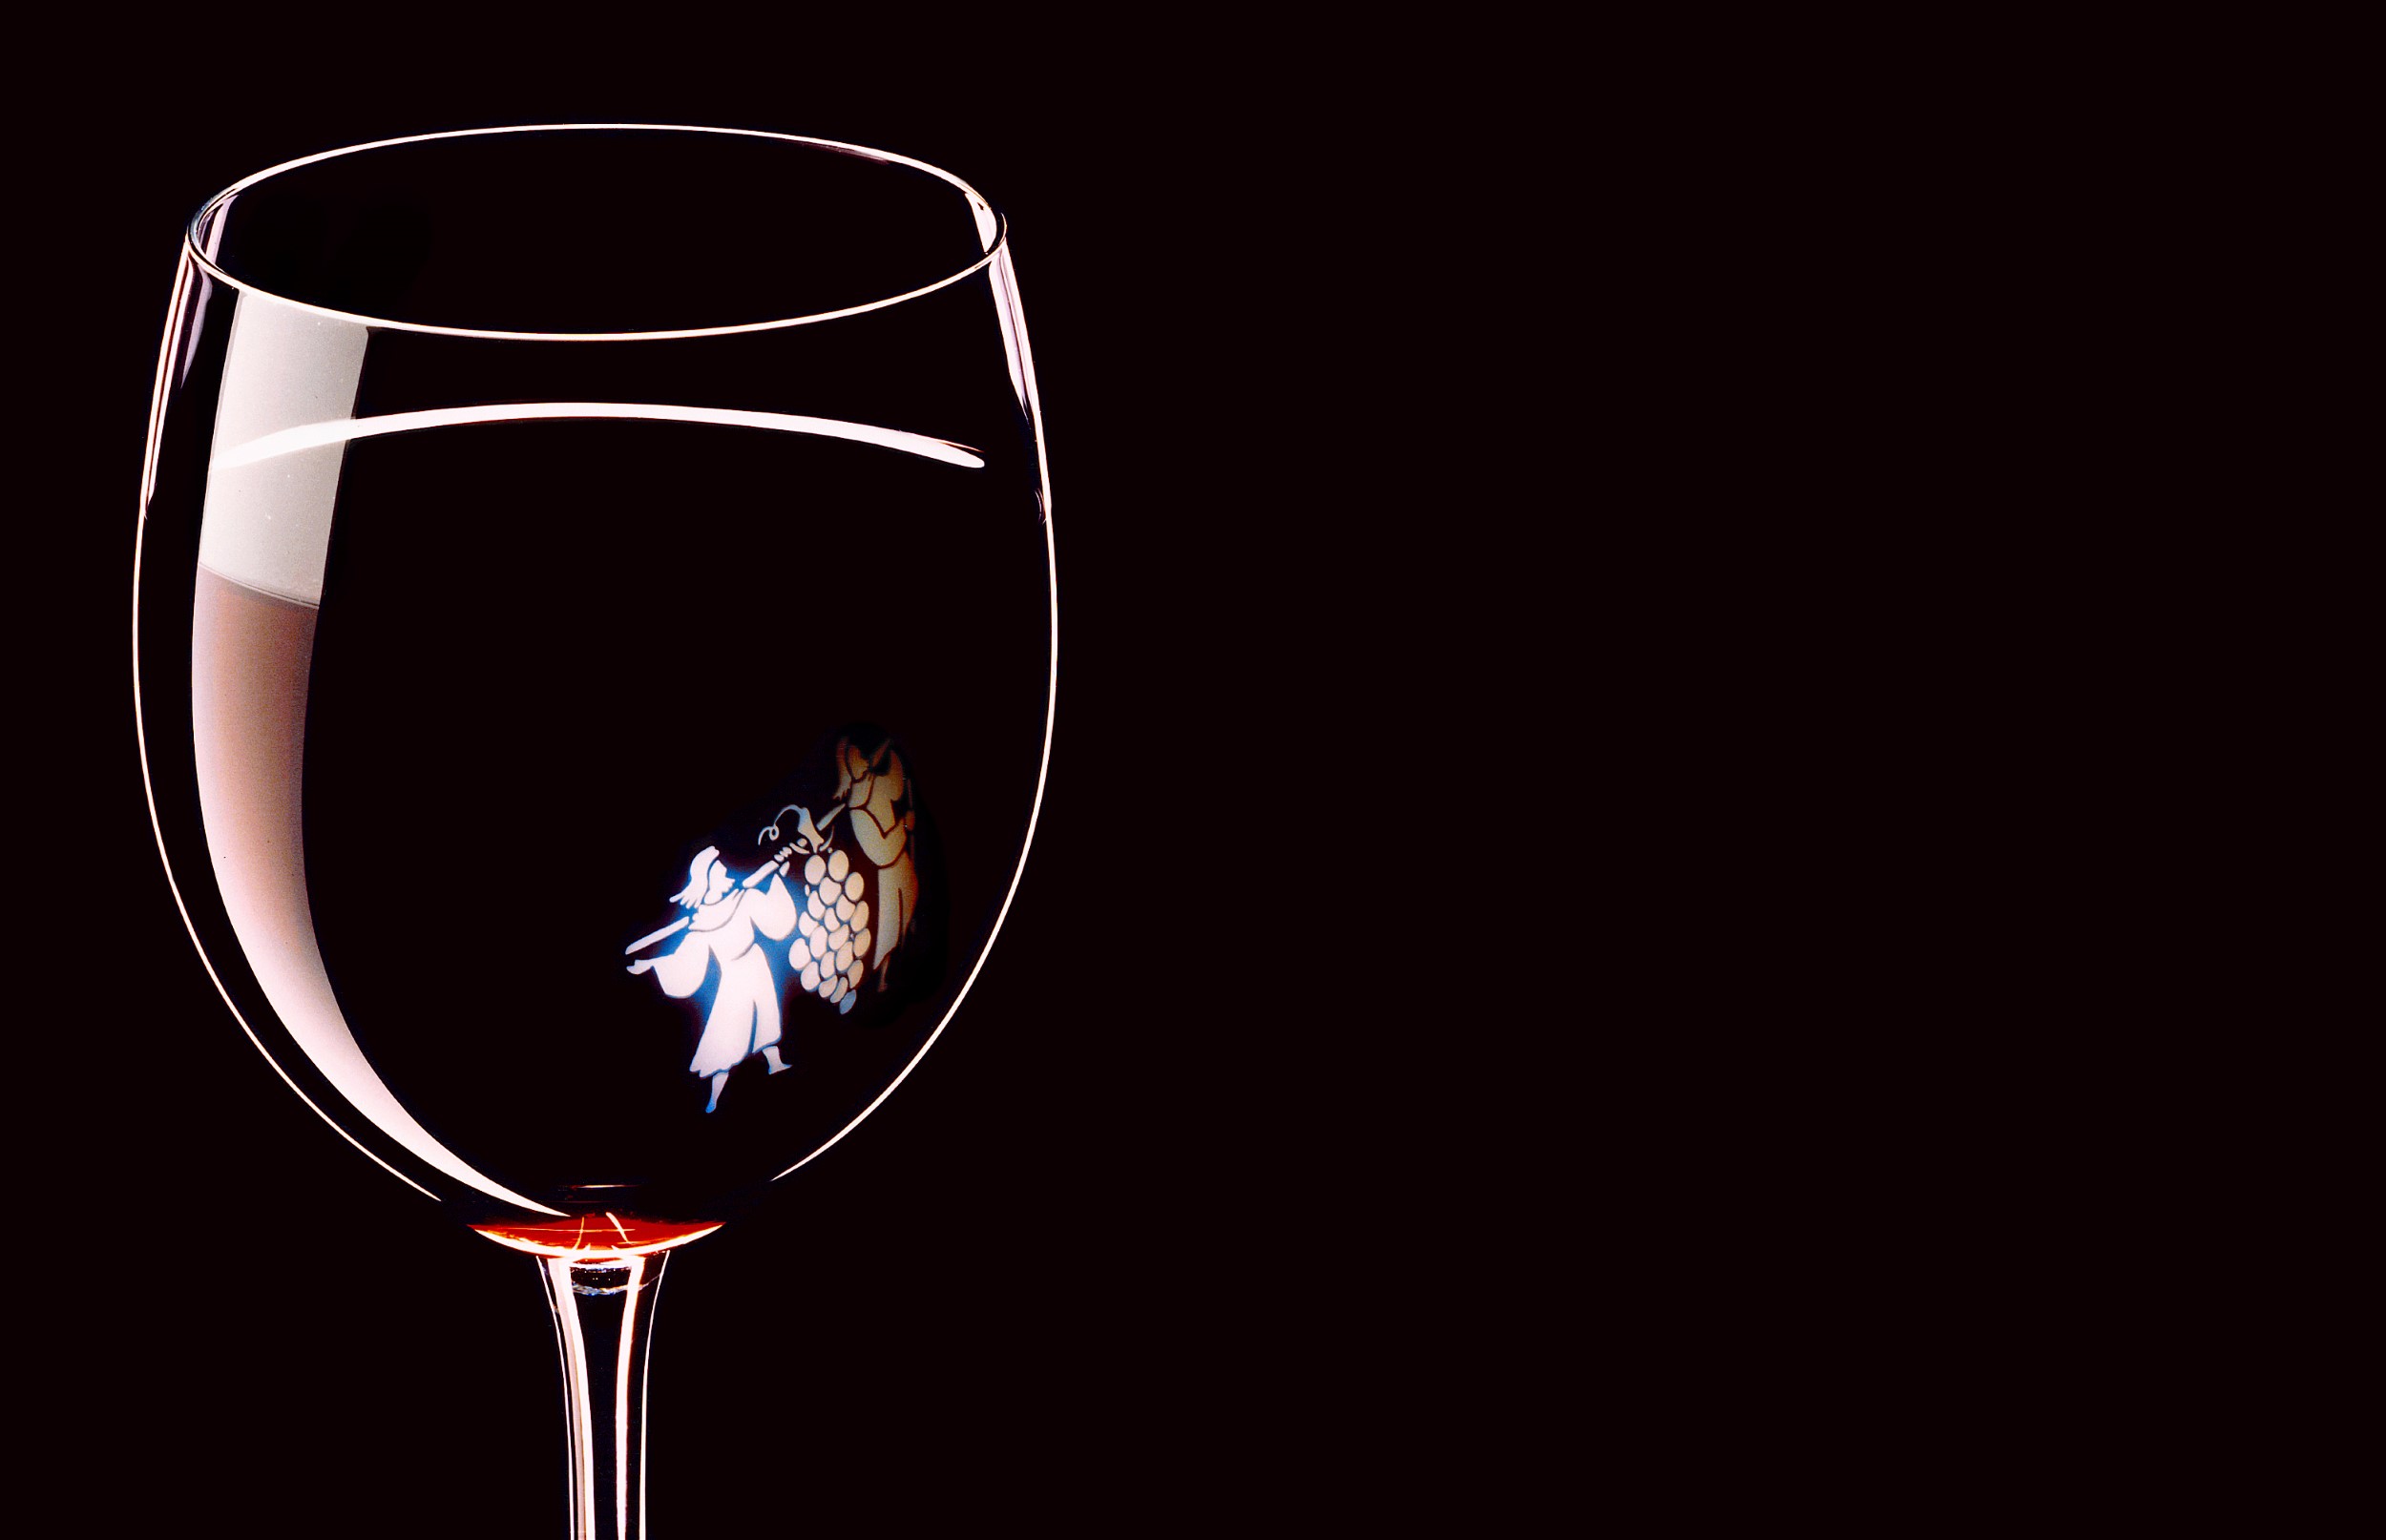 בצילום כוס היין היה רק רמז אדום בתחתית הכוס, משרד פרסום: מקאן אריקסון, צלם מנחם רייס קריאיטיב דירקטור אורי שלזינגר.